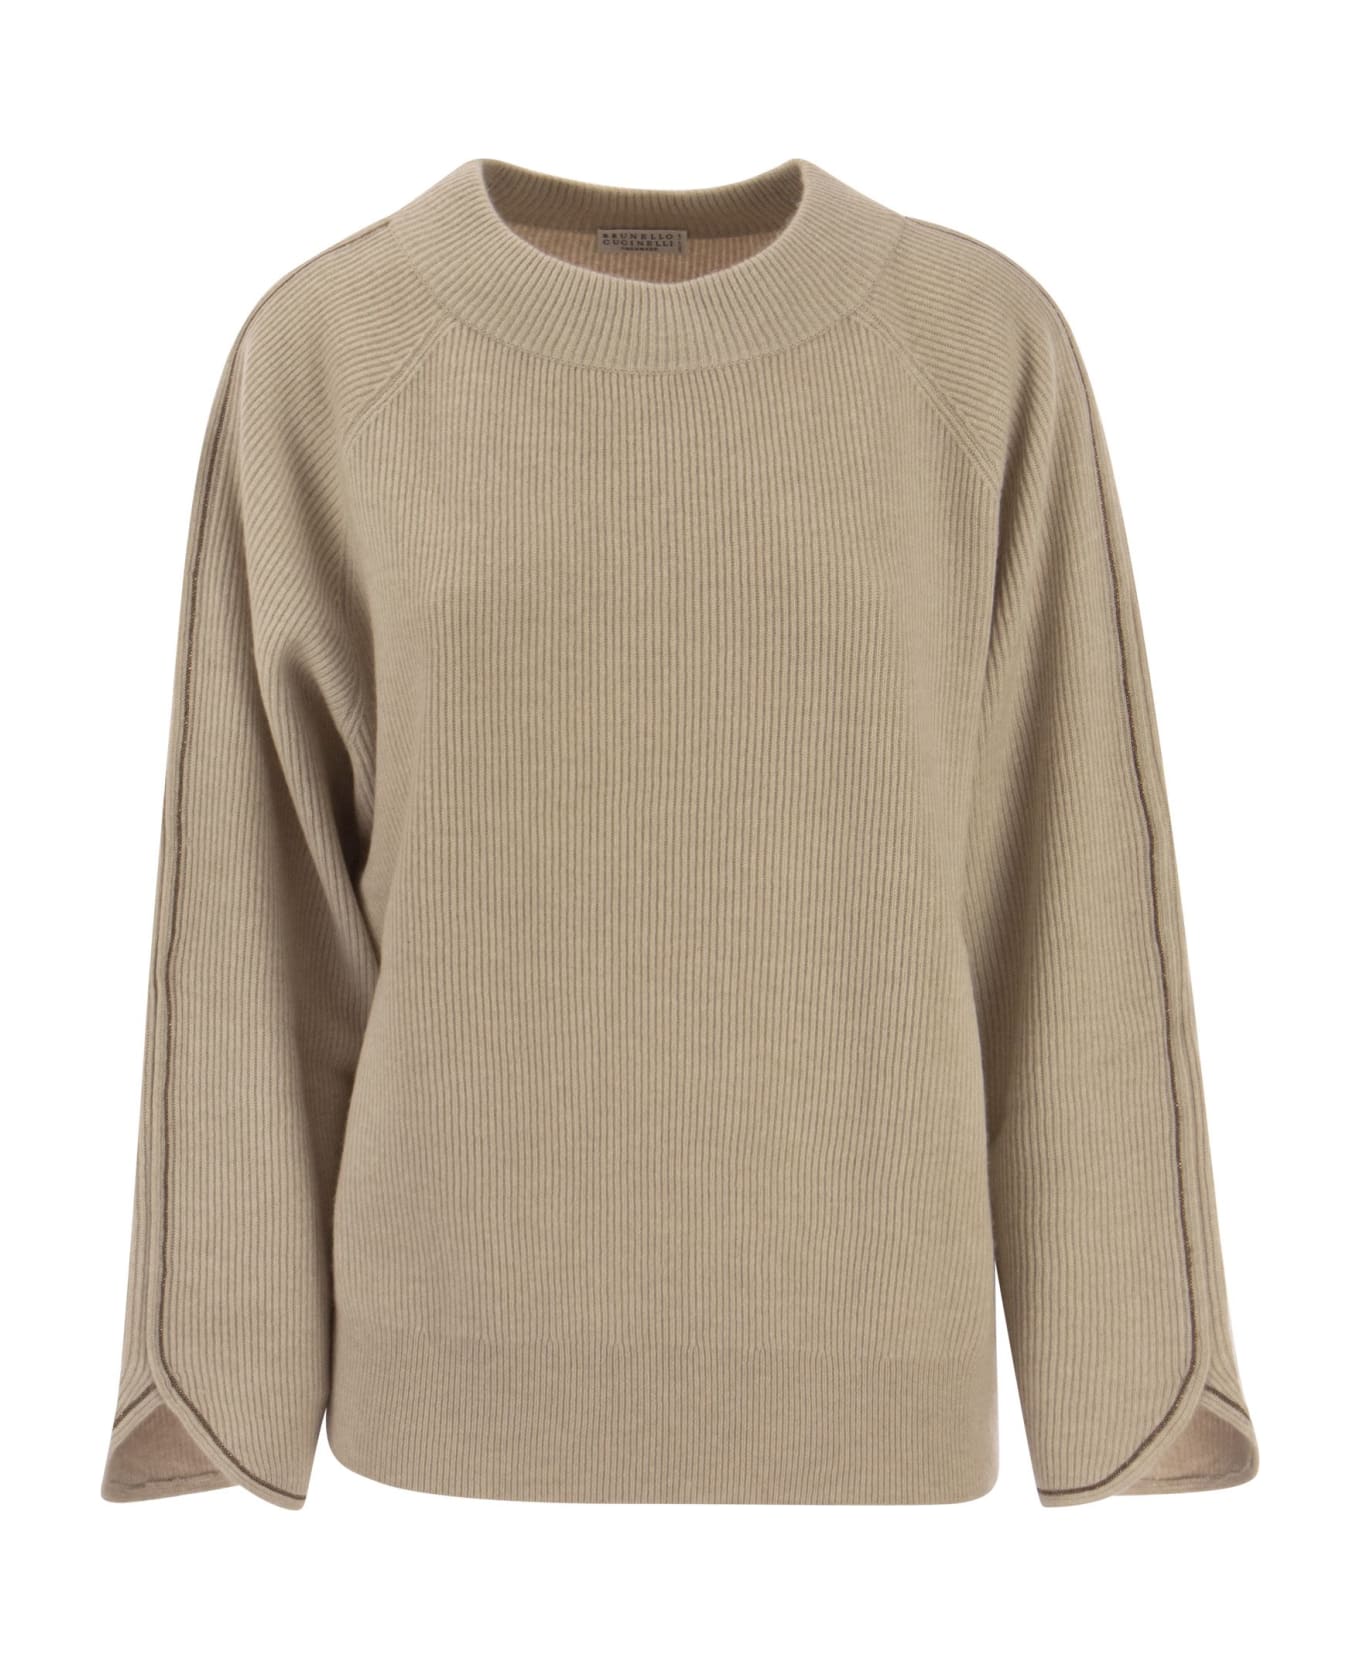 Brunello Cucinelli Cashmere Sweater With Monile - Sand